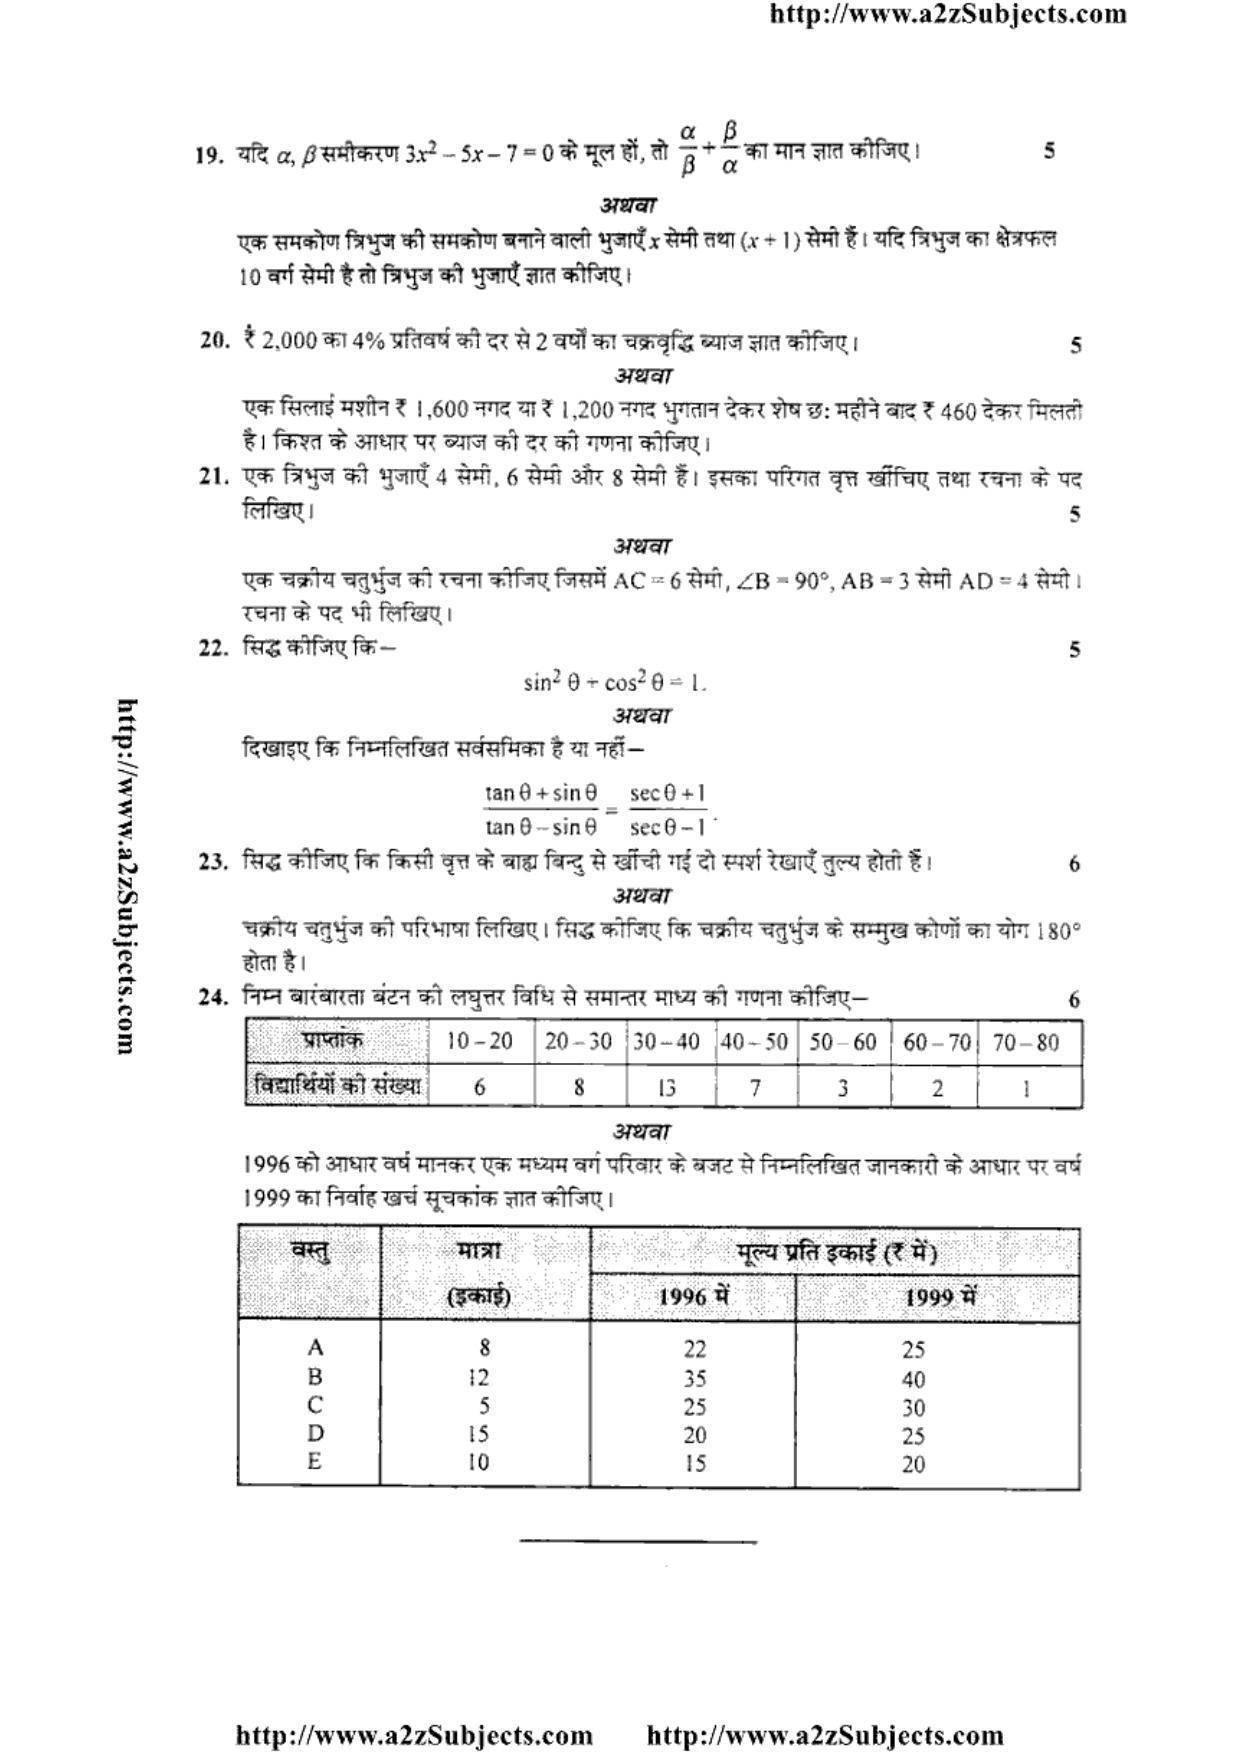 MP Board Class 10 Mathematica ( Hindi Medium) 2016 Question Paper - Page 4